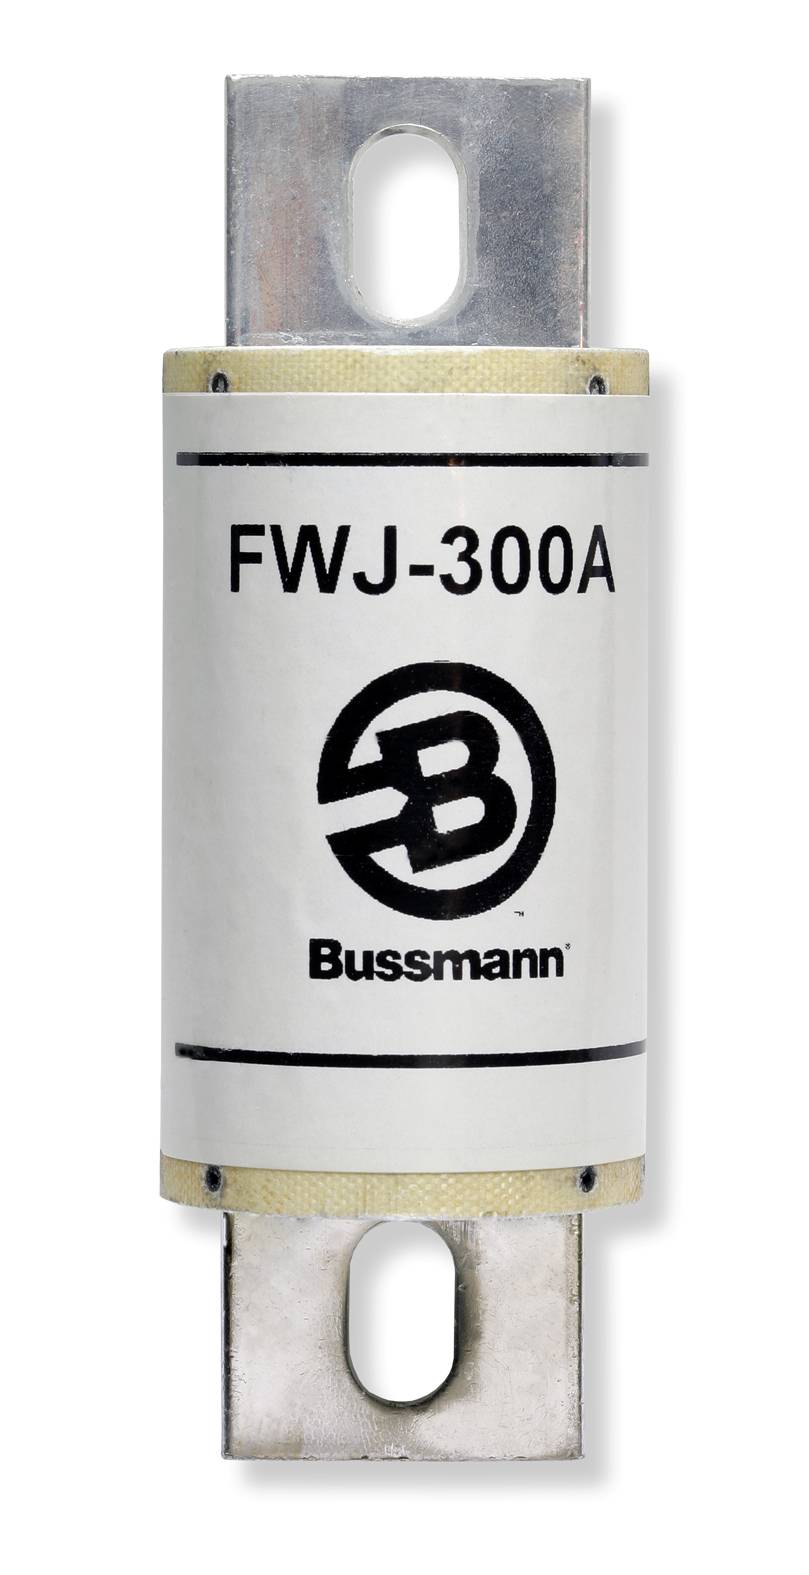 Part # FWJ-1600A  Manufacturer BUSSMANN  Product Type 1000 Volt Fuse